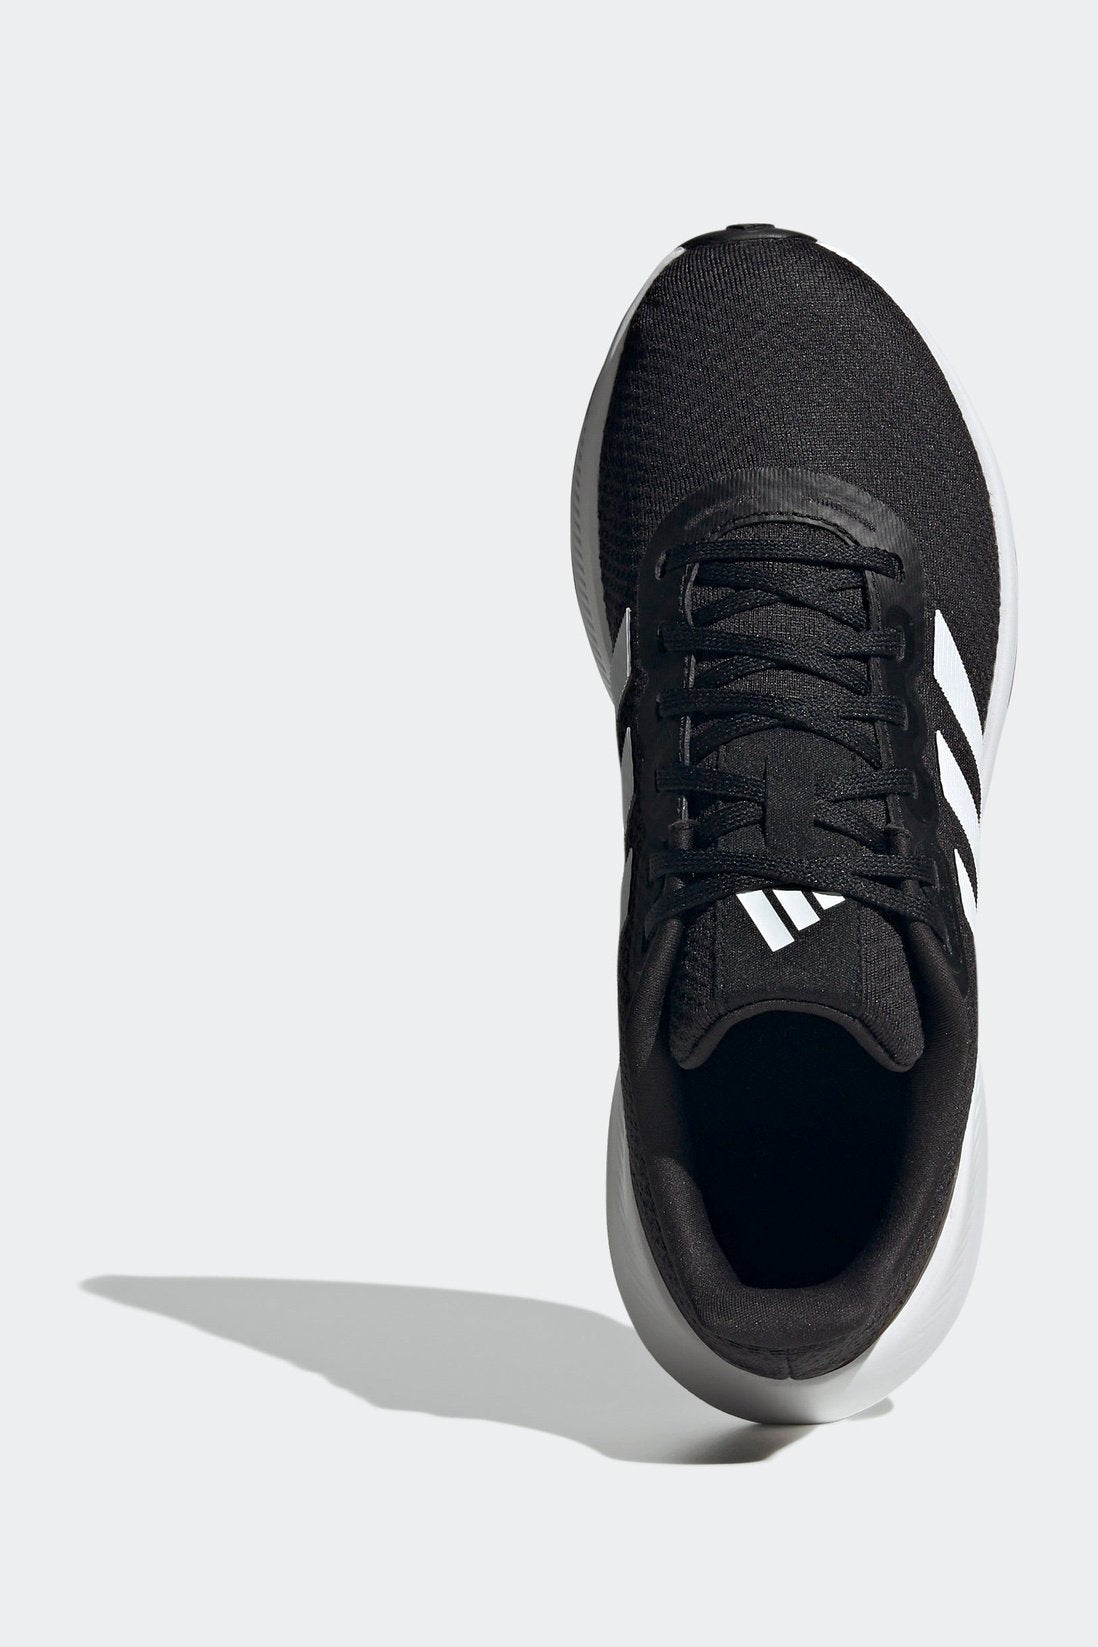 נעלי ספורט לנשים RUNFALCON WIDE 3 בצבע שחור ולבן